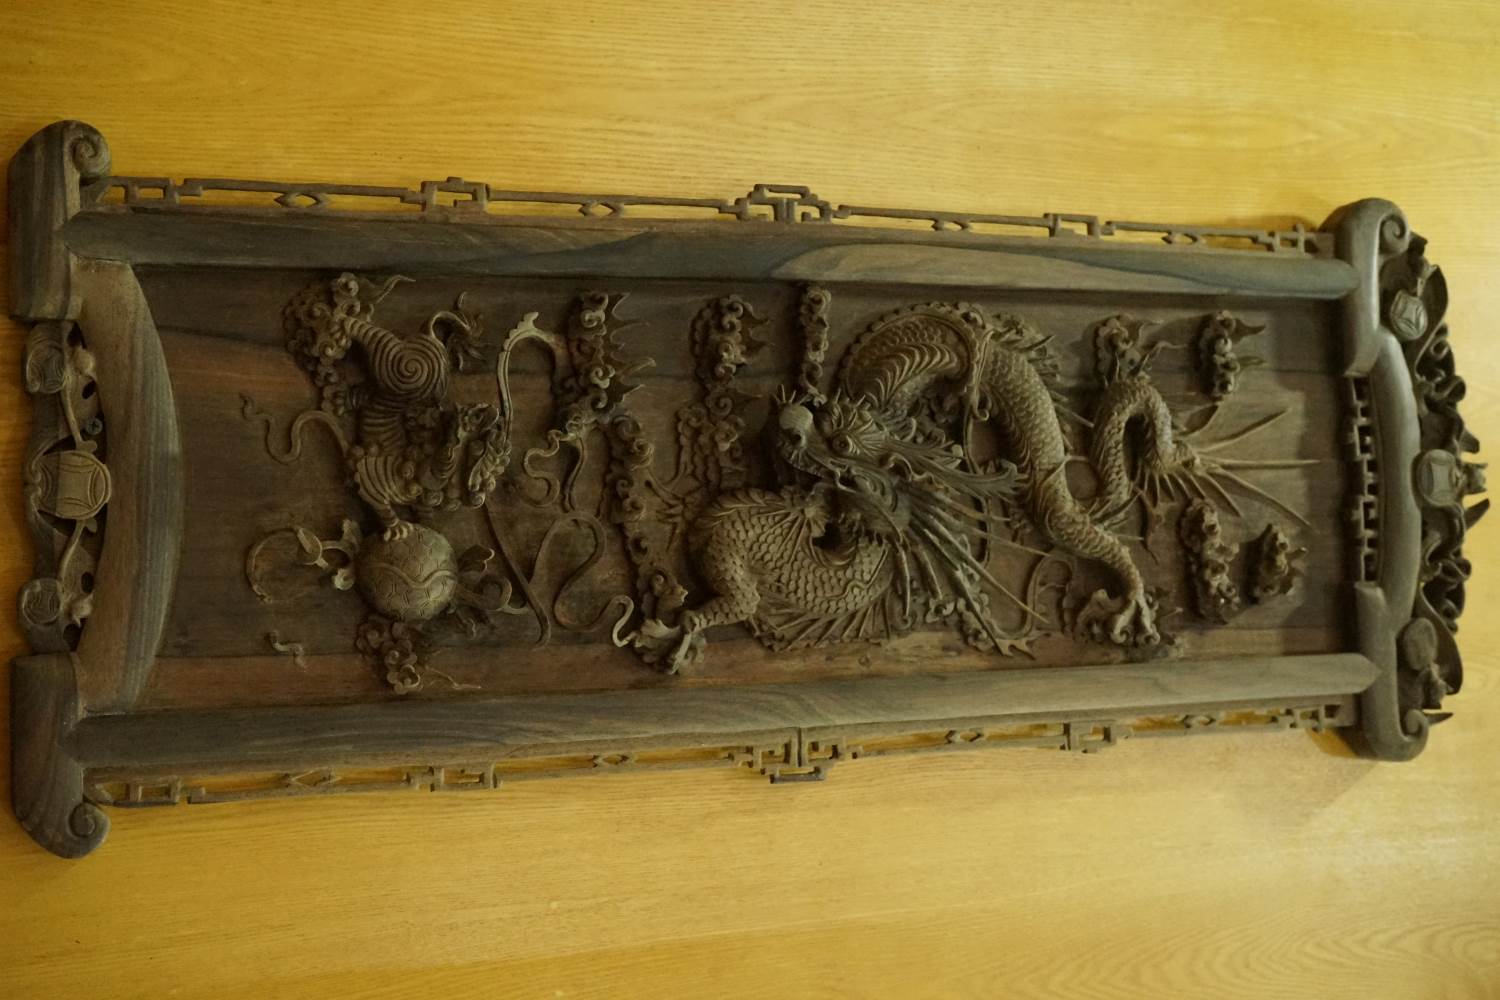 Tranh gỗ trang trí hình tượng rồng (thế kỷ XX) sưu tầm tại Thanh Hóa. Ảnh: Quách Du